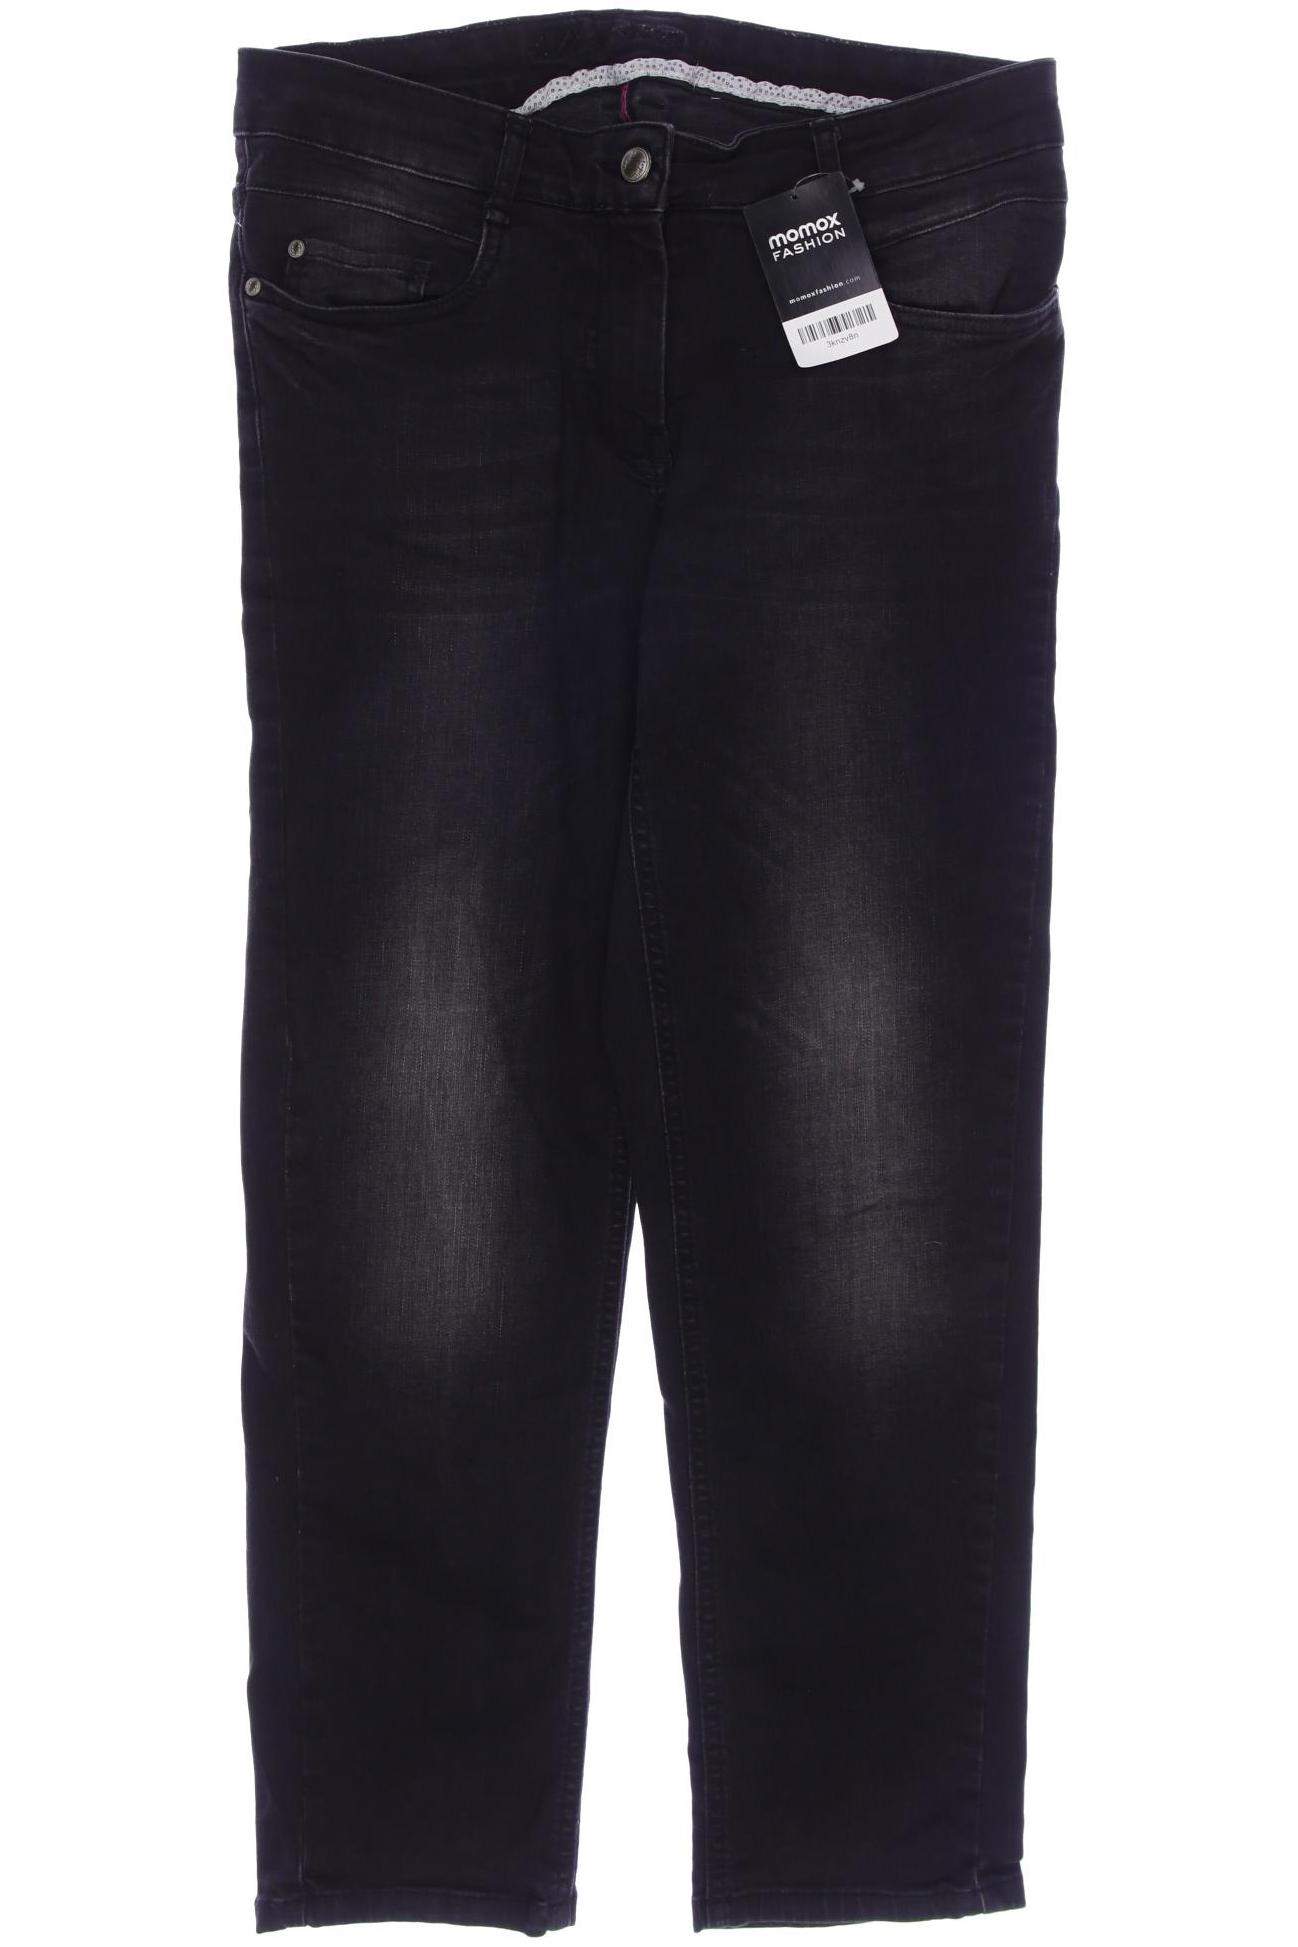 Deerberg Damen Jeans, schwarz, Gr. 36 von Deerberg